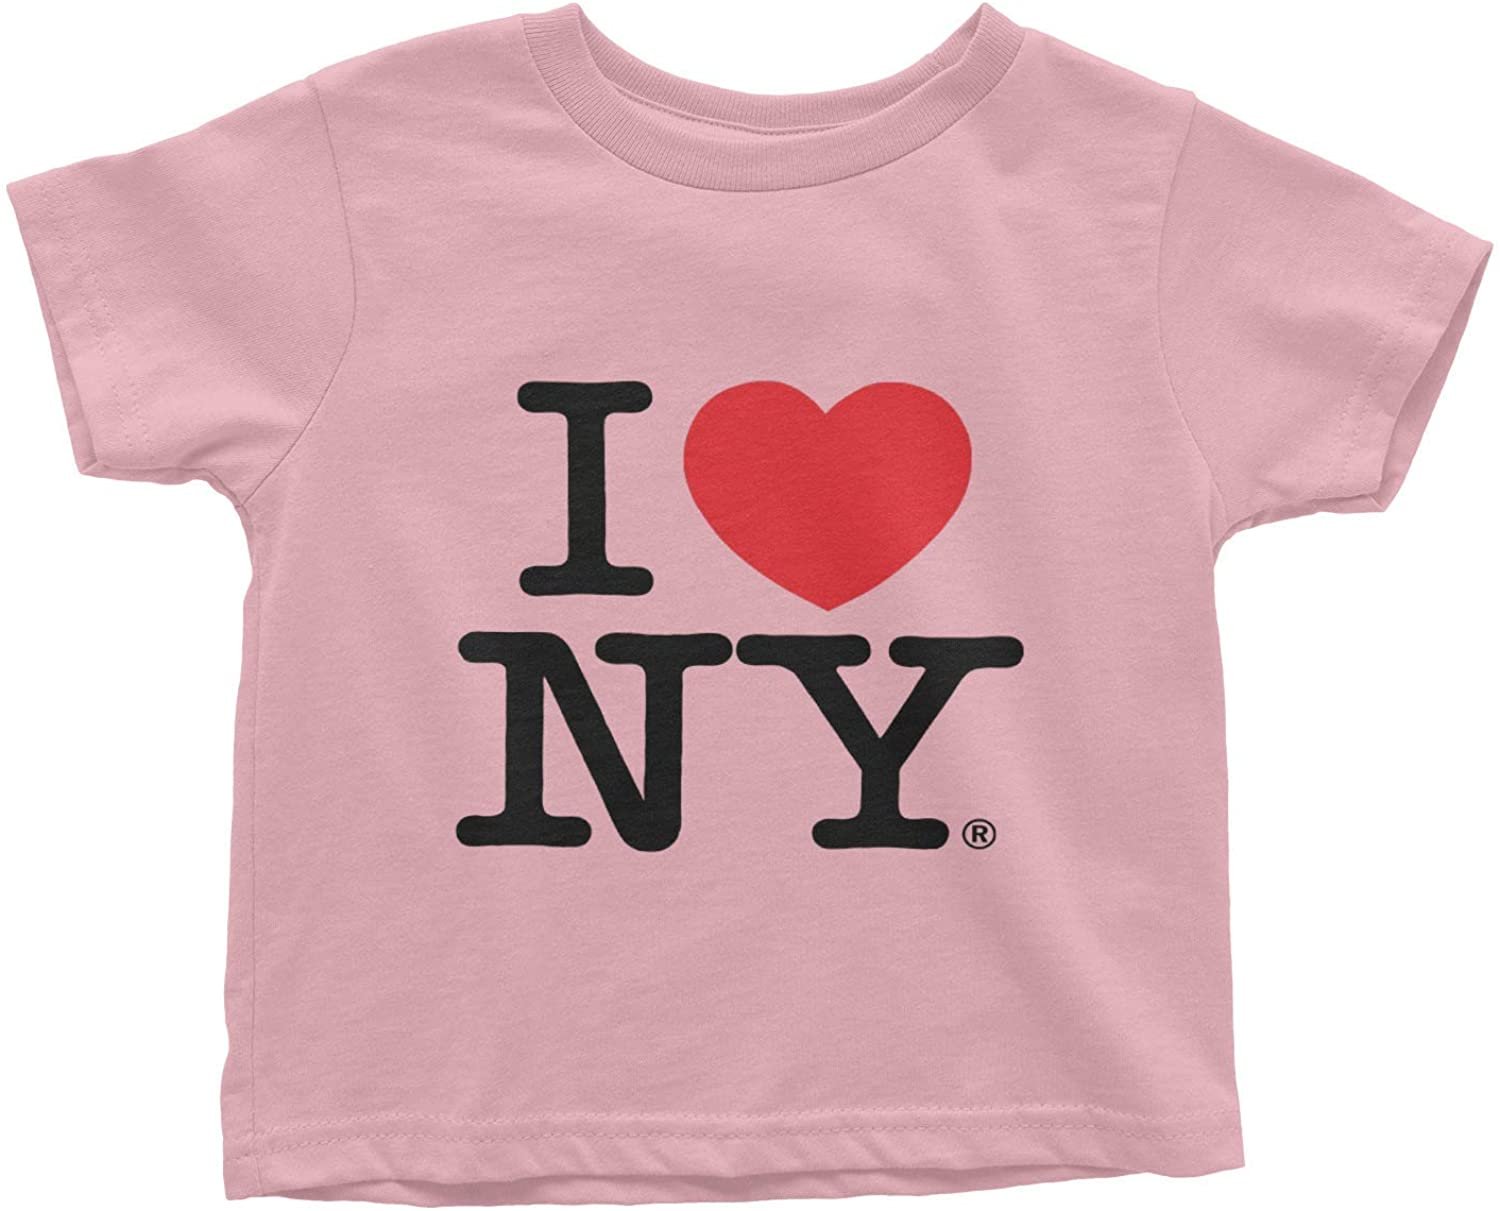 I Love NY Baby Tee Pink